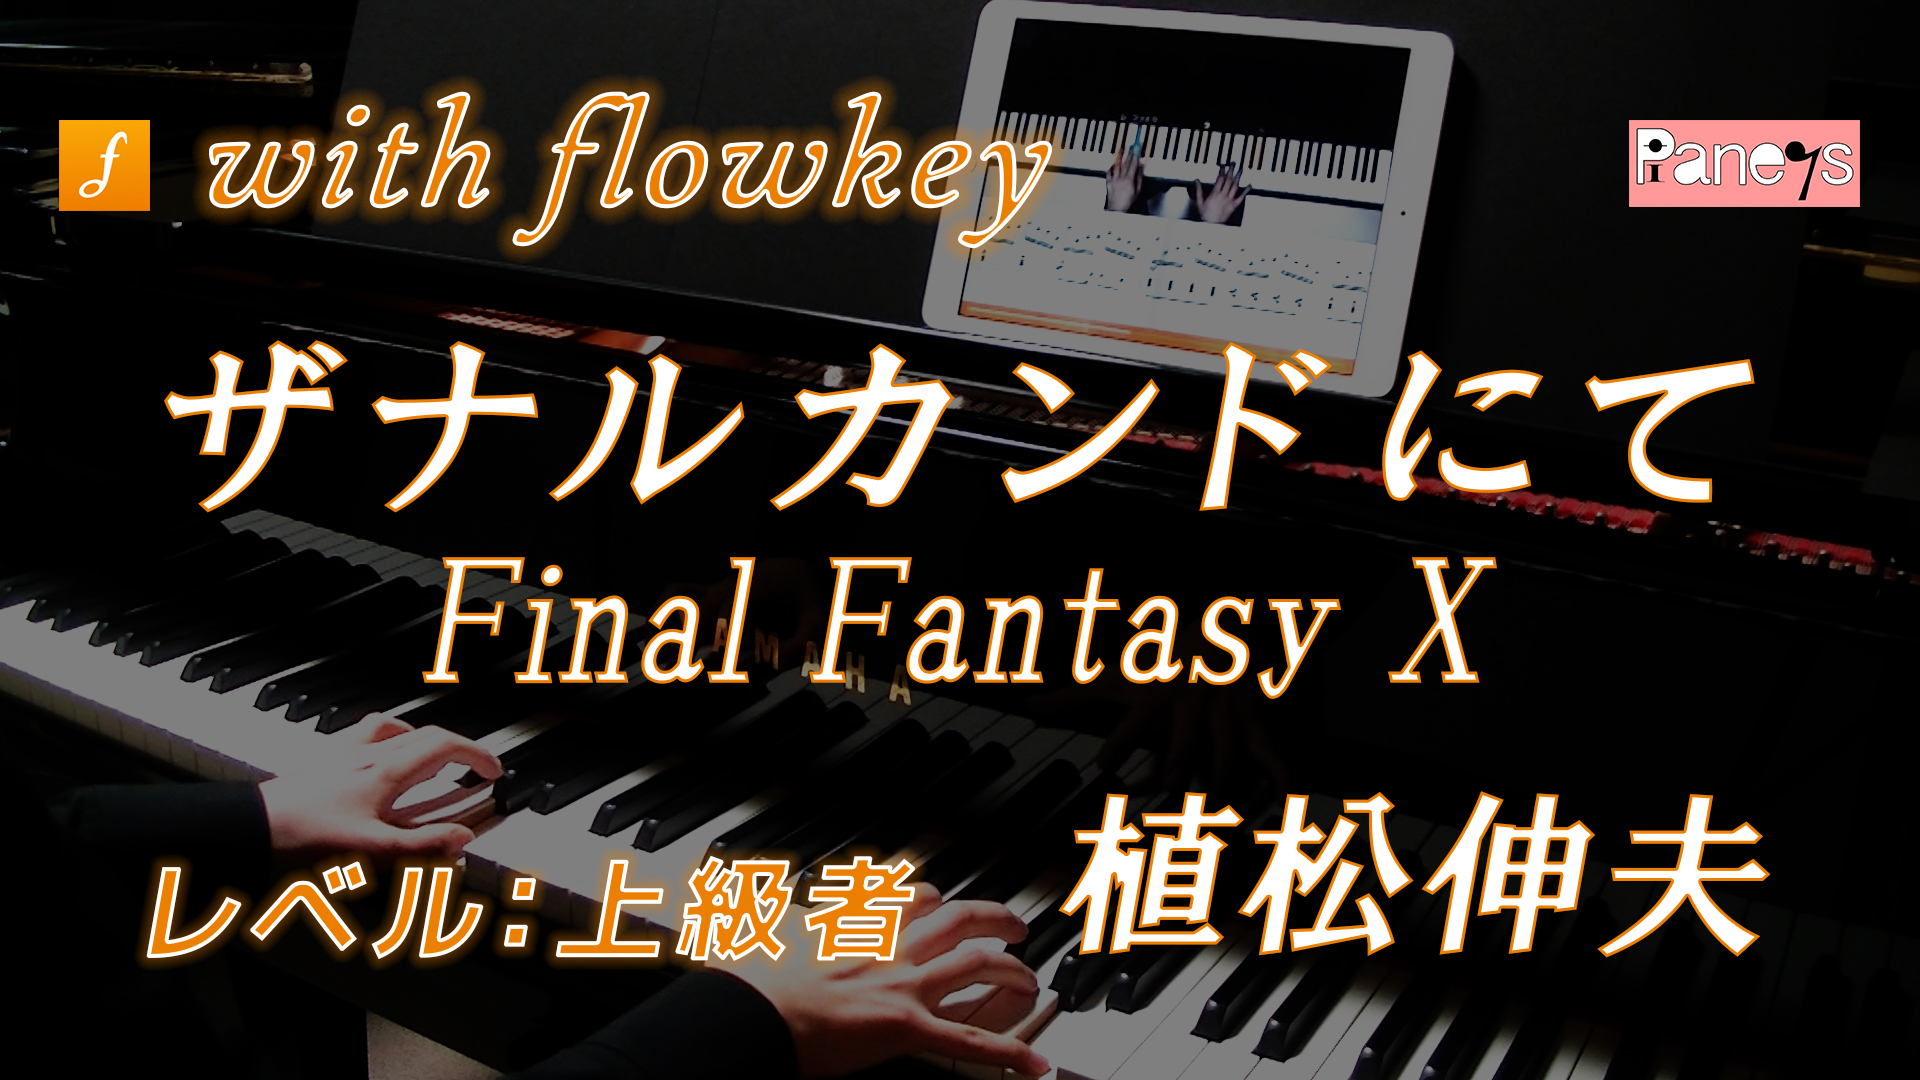 Ff10 ザナルカンドにて をflowkeyで演奏してみた ピアノの先生のブログ ピアノライフ